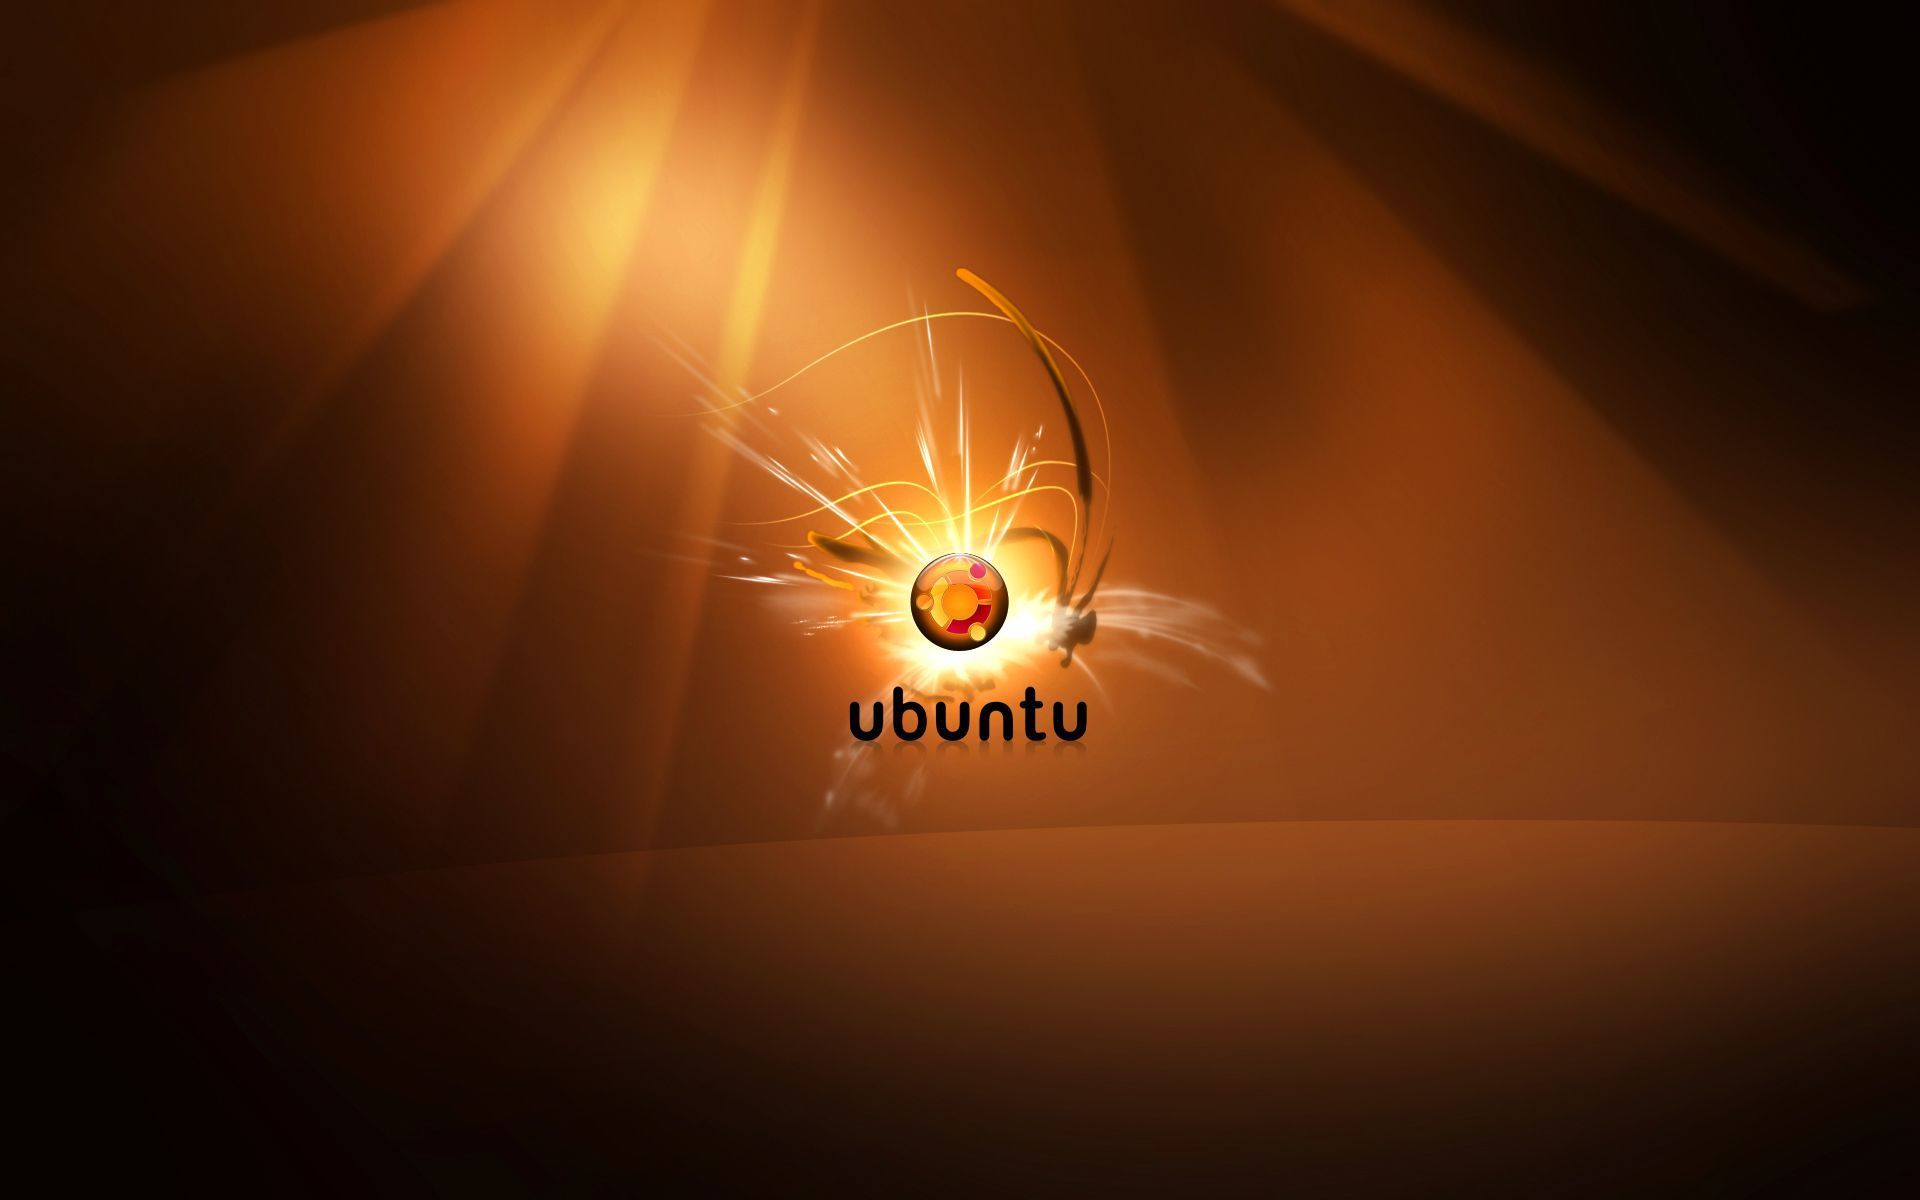 Top 10 Ubuntu HD Wallpapers ~ Toptenpack.com